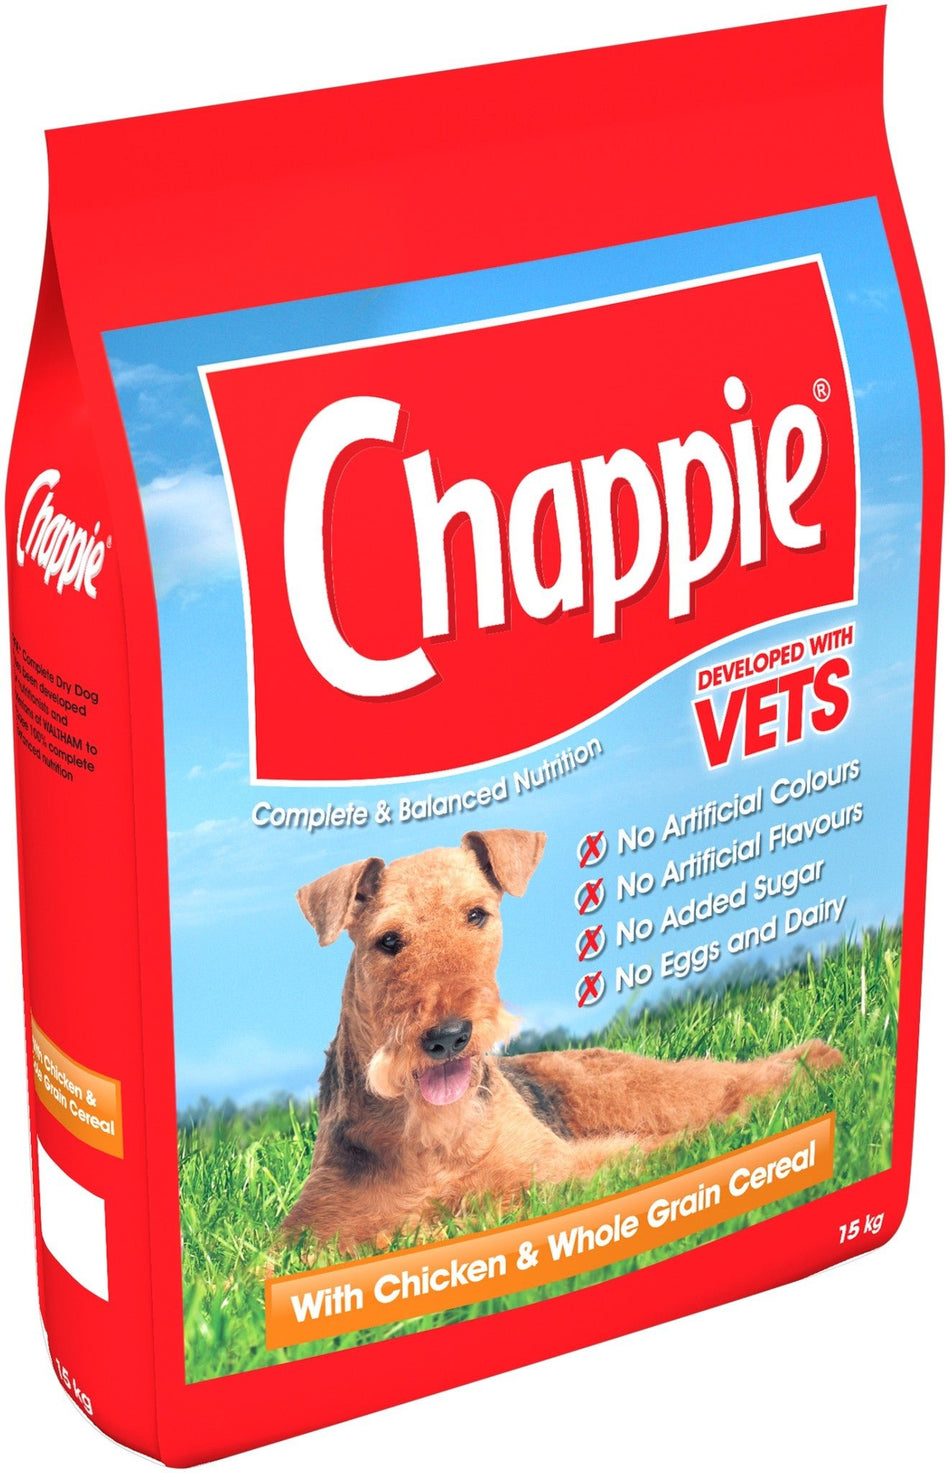 Chappie Chicken Dog Food